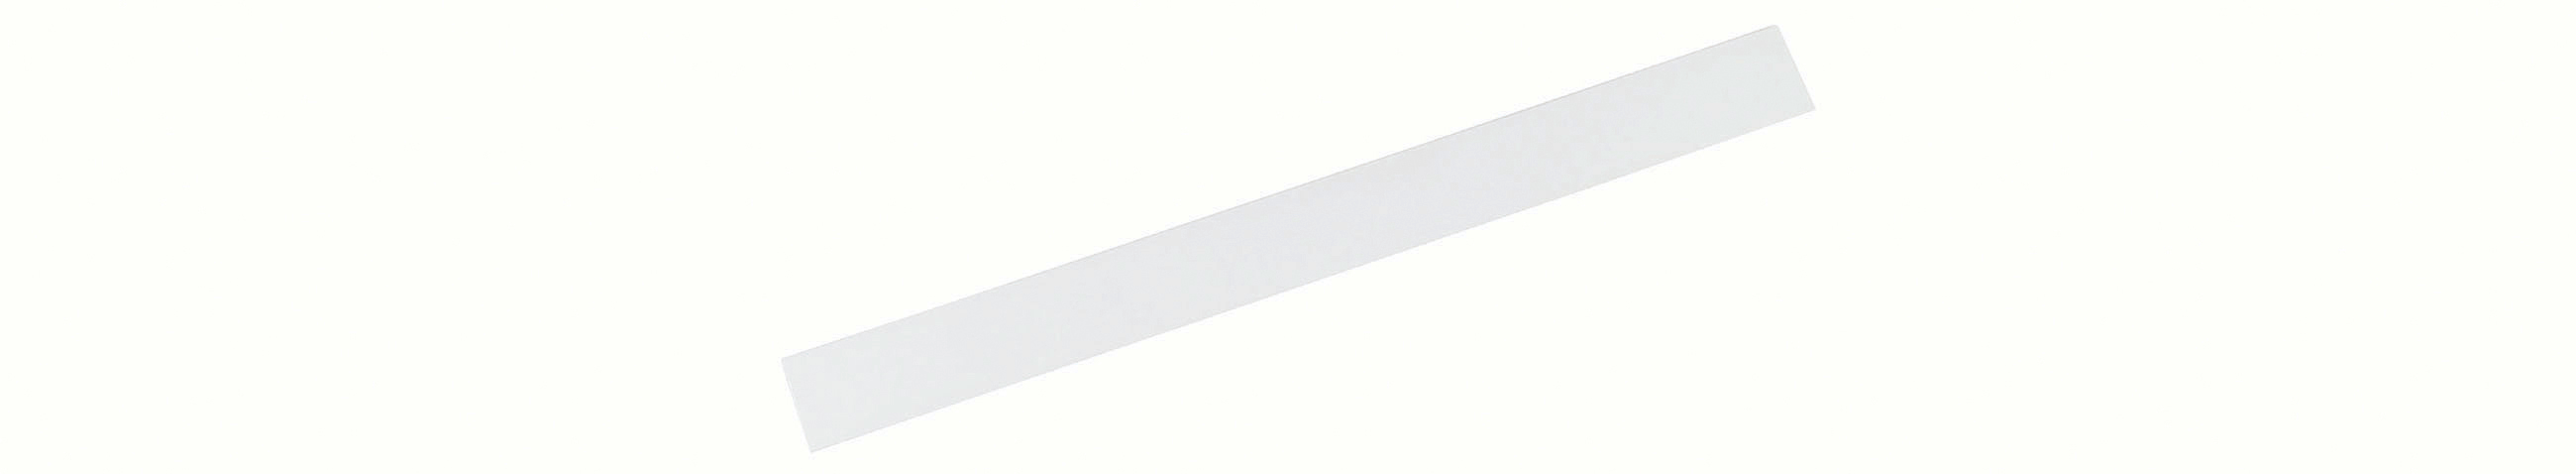 MAUL Ferro band standard 50cm 6206002 blanc